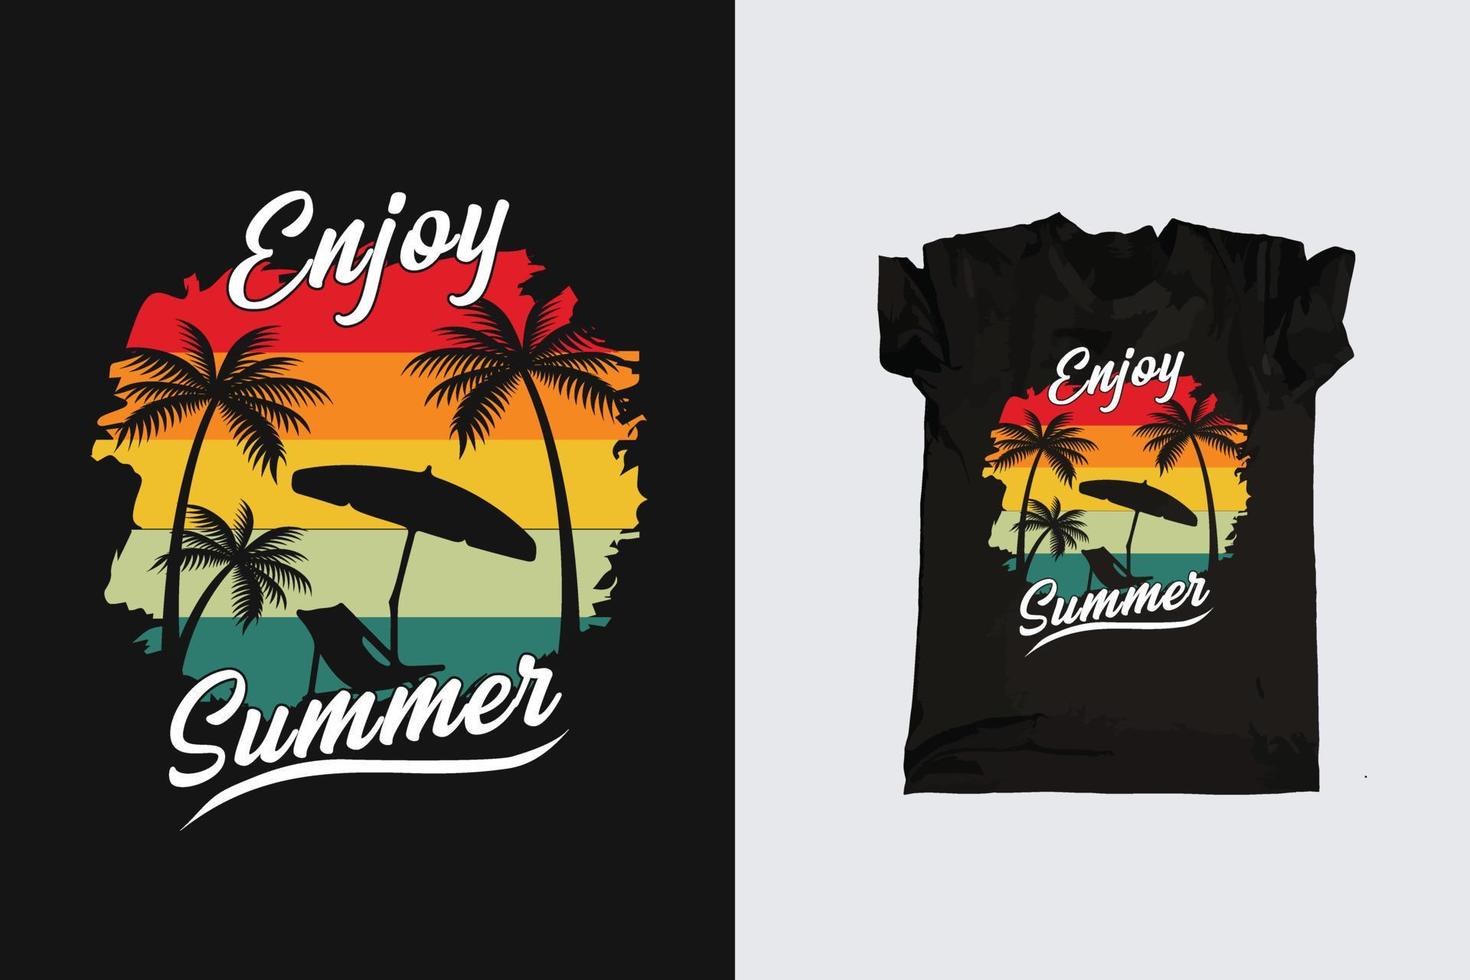 Clásico retro puesta de sol verano playa camiseta diseño para verano vibraciones solo, California playa disfrutar verano con palma arboles silla de cubierta paraguas camiseta gráficos bandera, póster, volantes vector ilustración